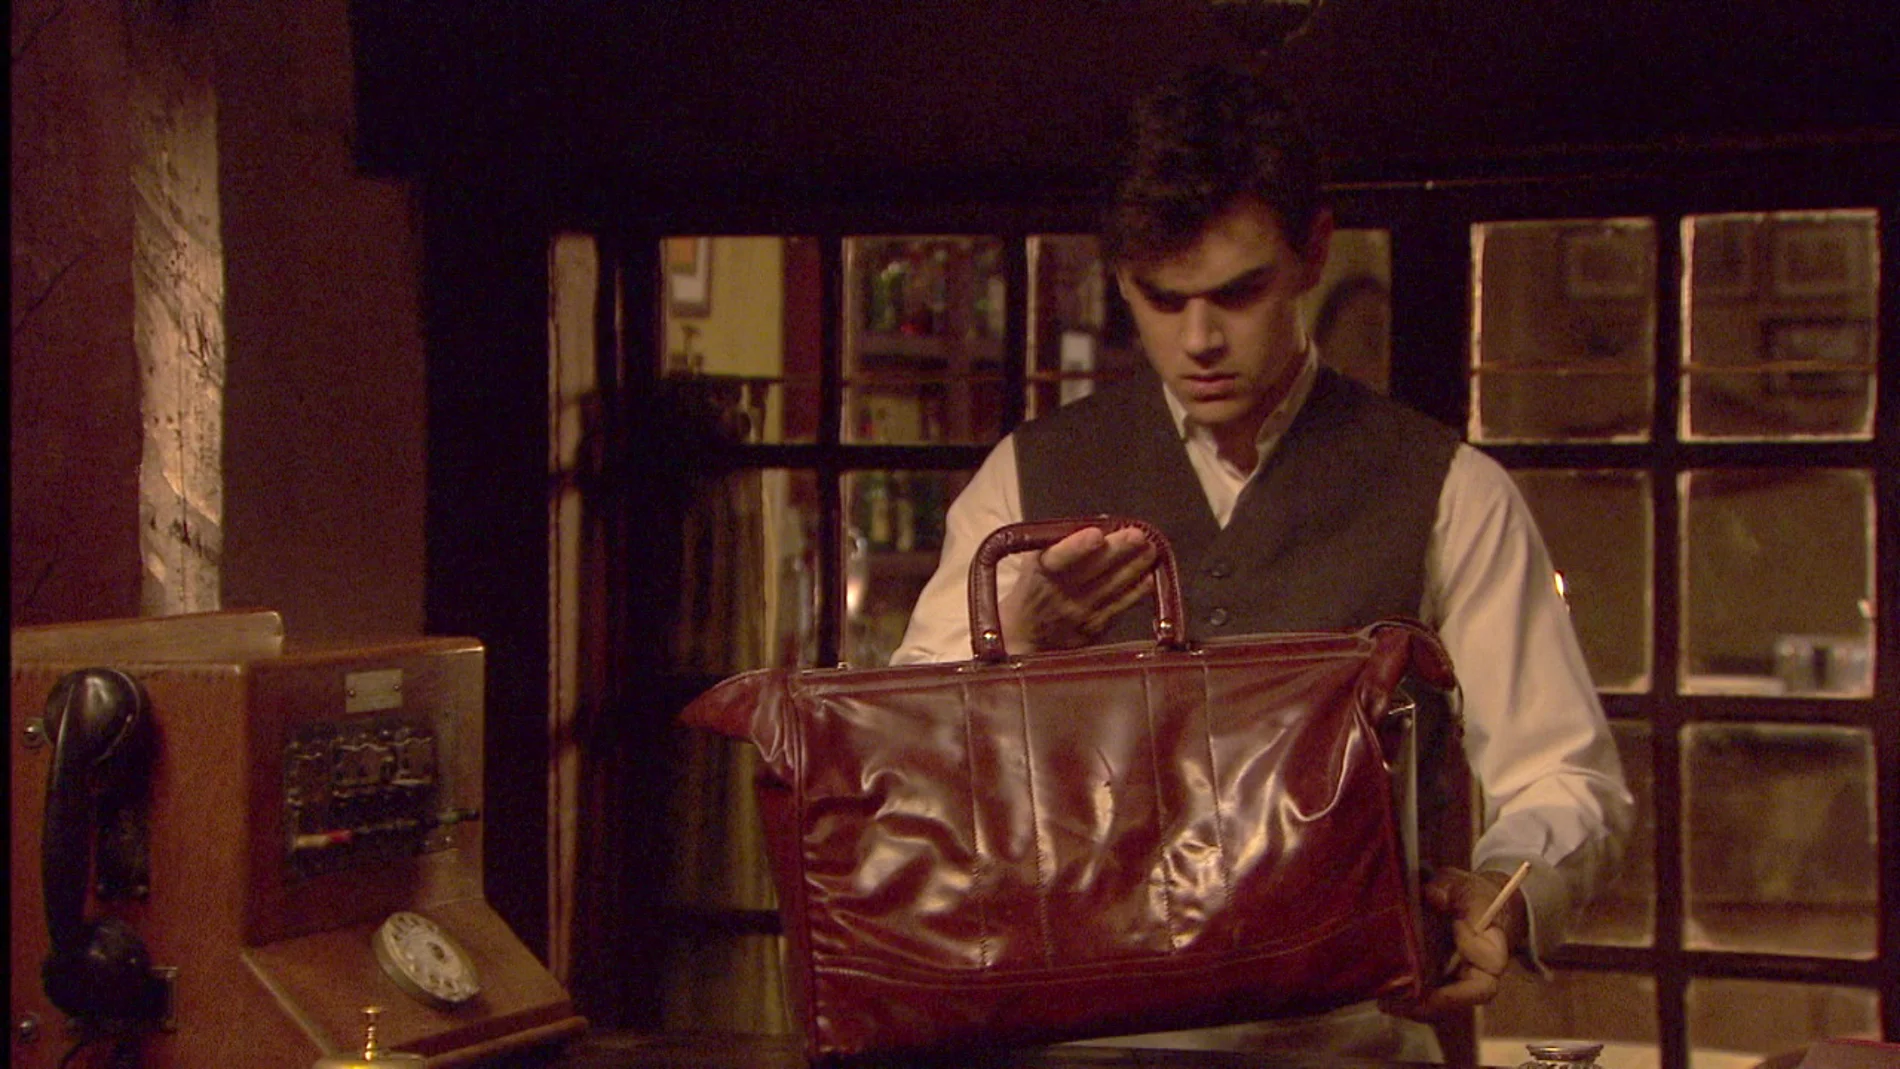 Matías descubre en la maleta de su abuelo placas para hacer falsificaciones